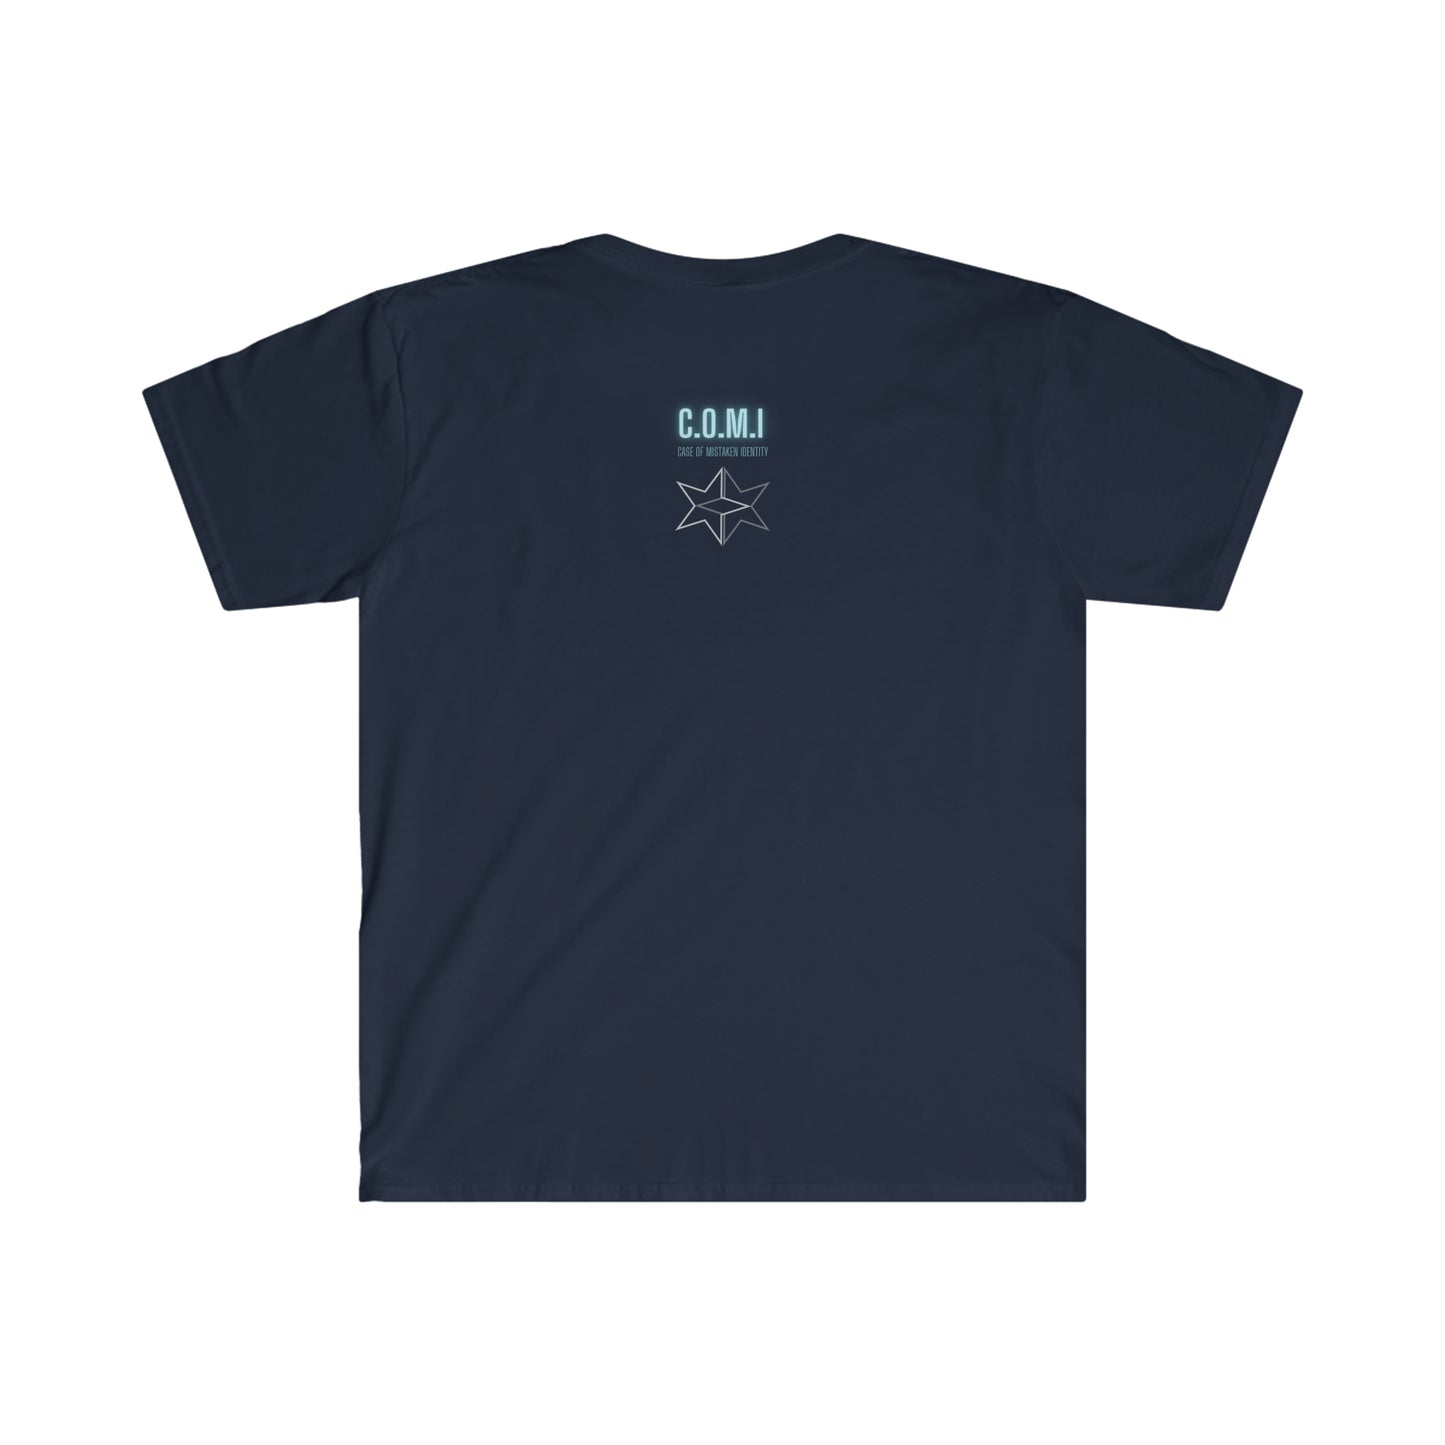 E30 M3 - Punk'd - Unisex Softstyle T-Shirt